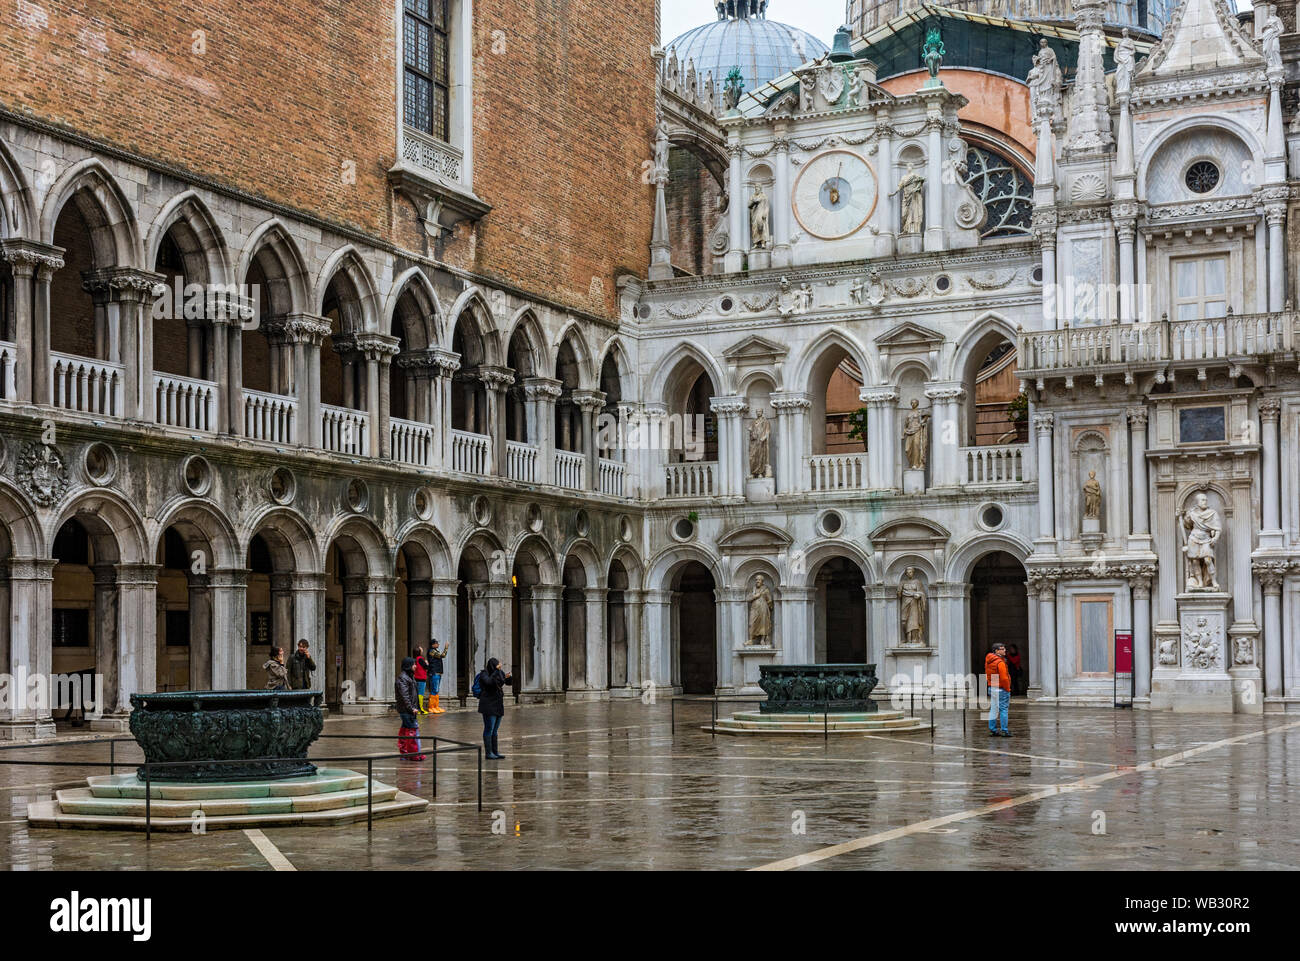 La Facciata dell' Orologio (Façade de l'horloge) et arcade dans la cour du palais des Doges (Palazzo Ducale), Venise, Italie Banque D'Images